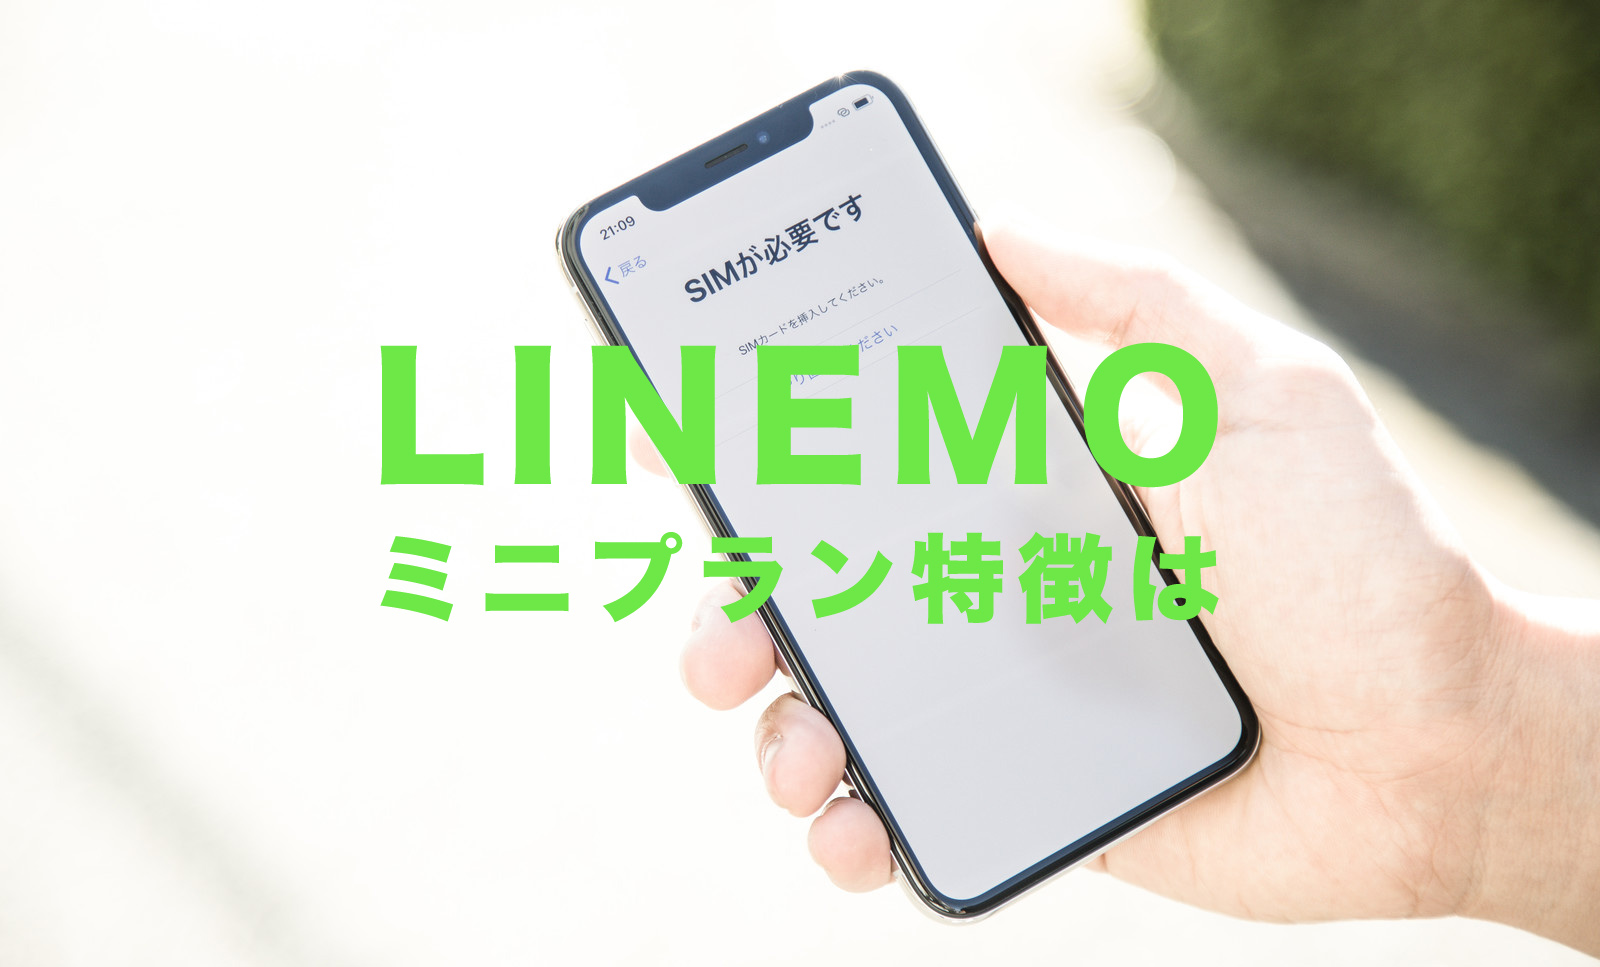 LINEMO(ラインモ)のミニプランは月額990円で3GBのデータ容量、プランの特徴を解説のサムネイル画像